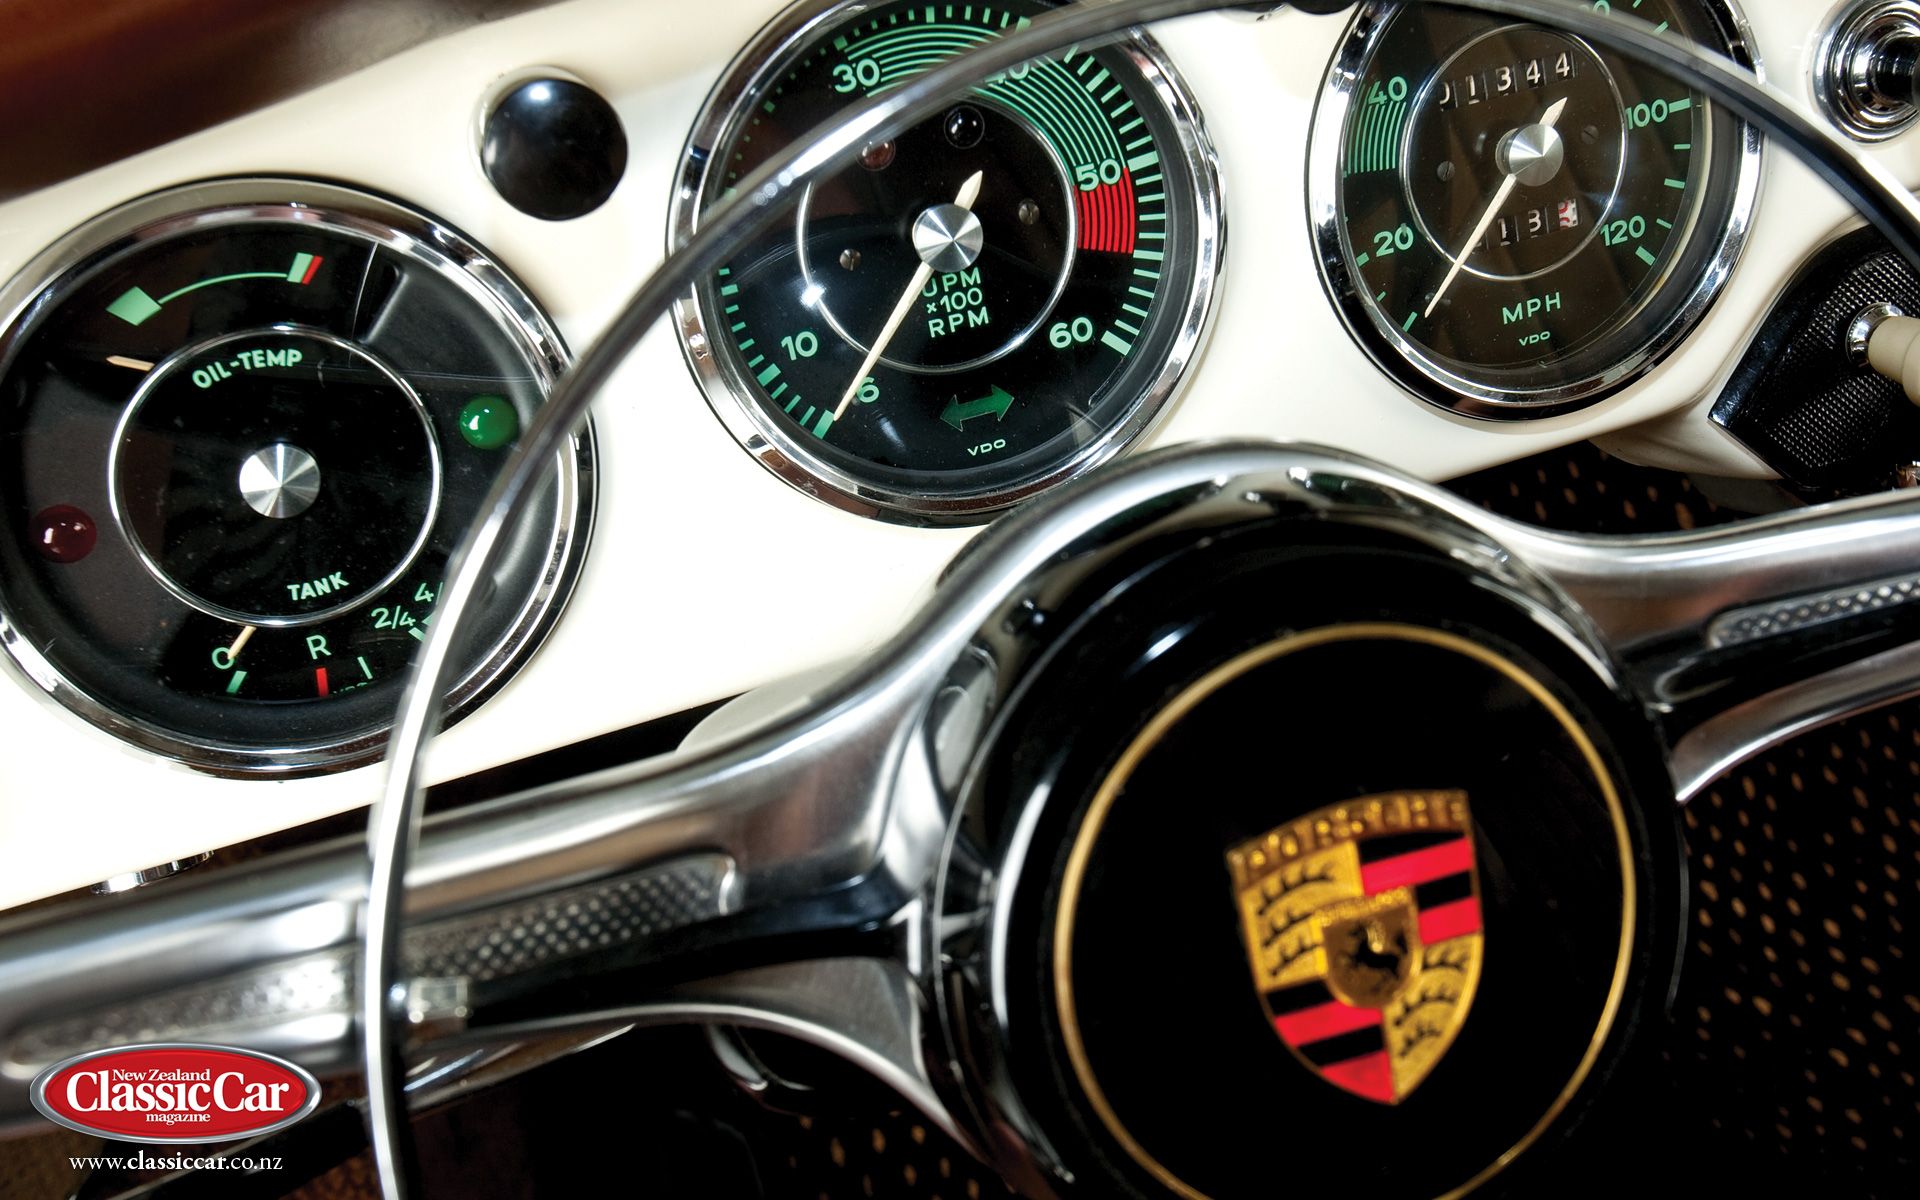 Porsche 356 Wallpapers